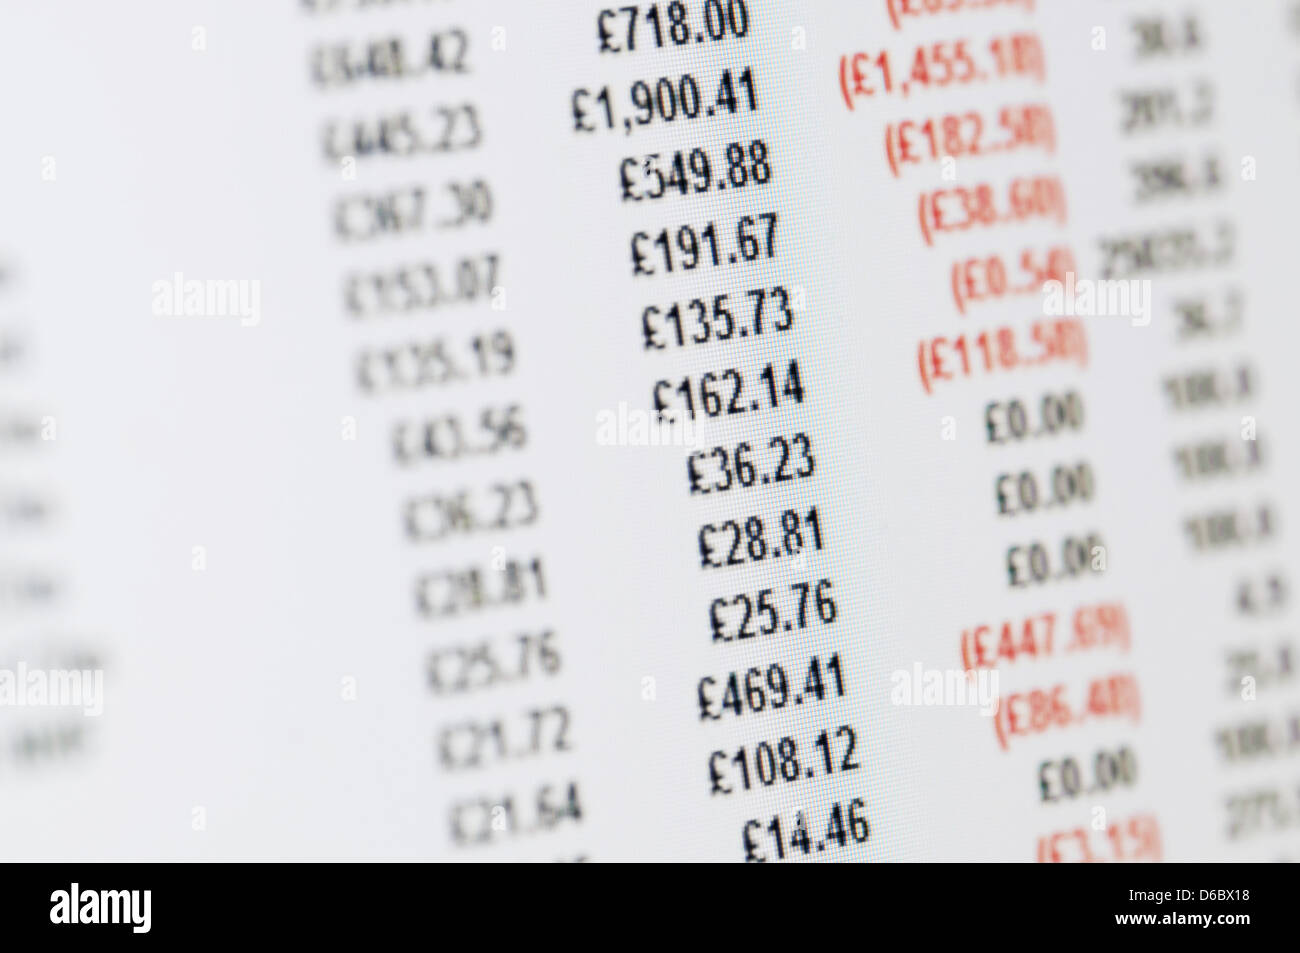 Business-Konzept - Nahaufnahme der Bilanz in Pfund auf einem hochauflösenden LCD-Bildschirm. Stockfoto